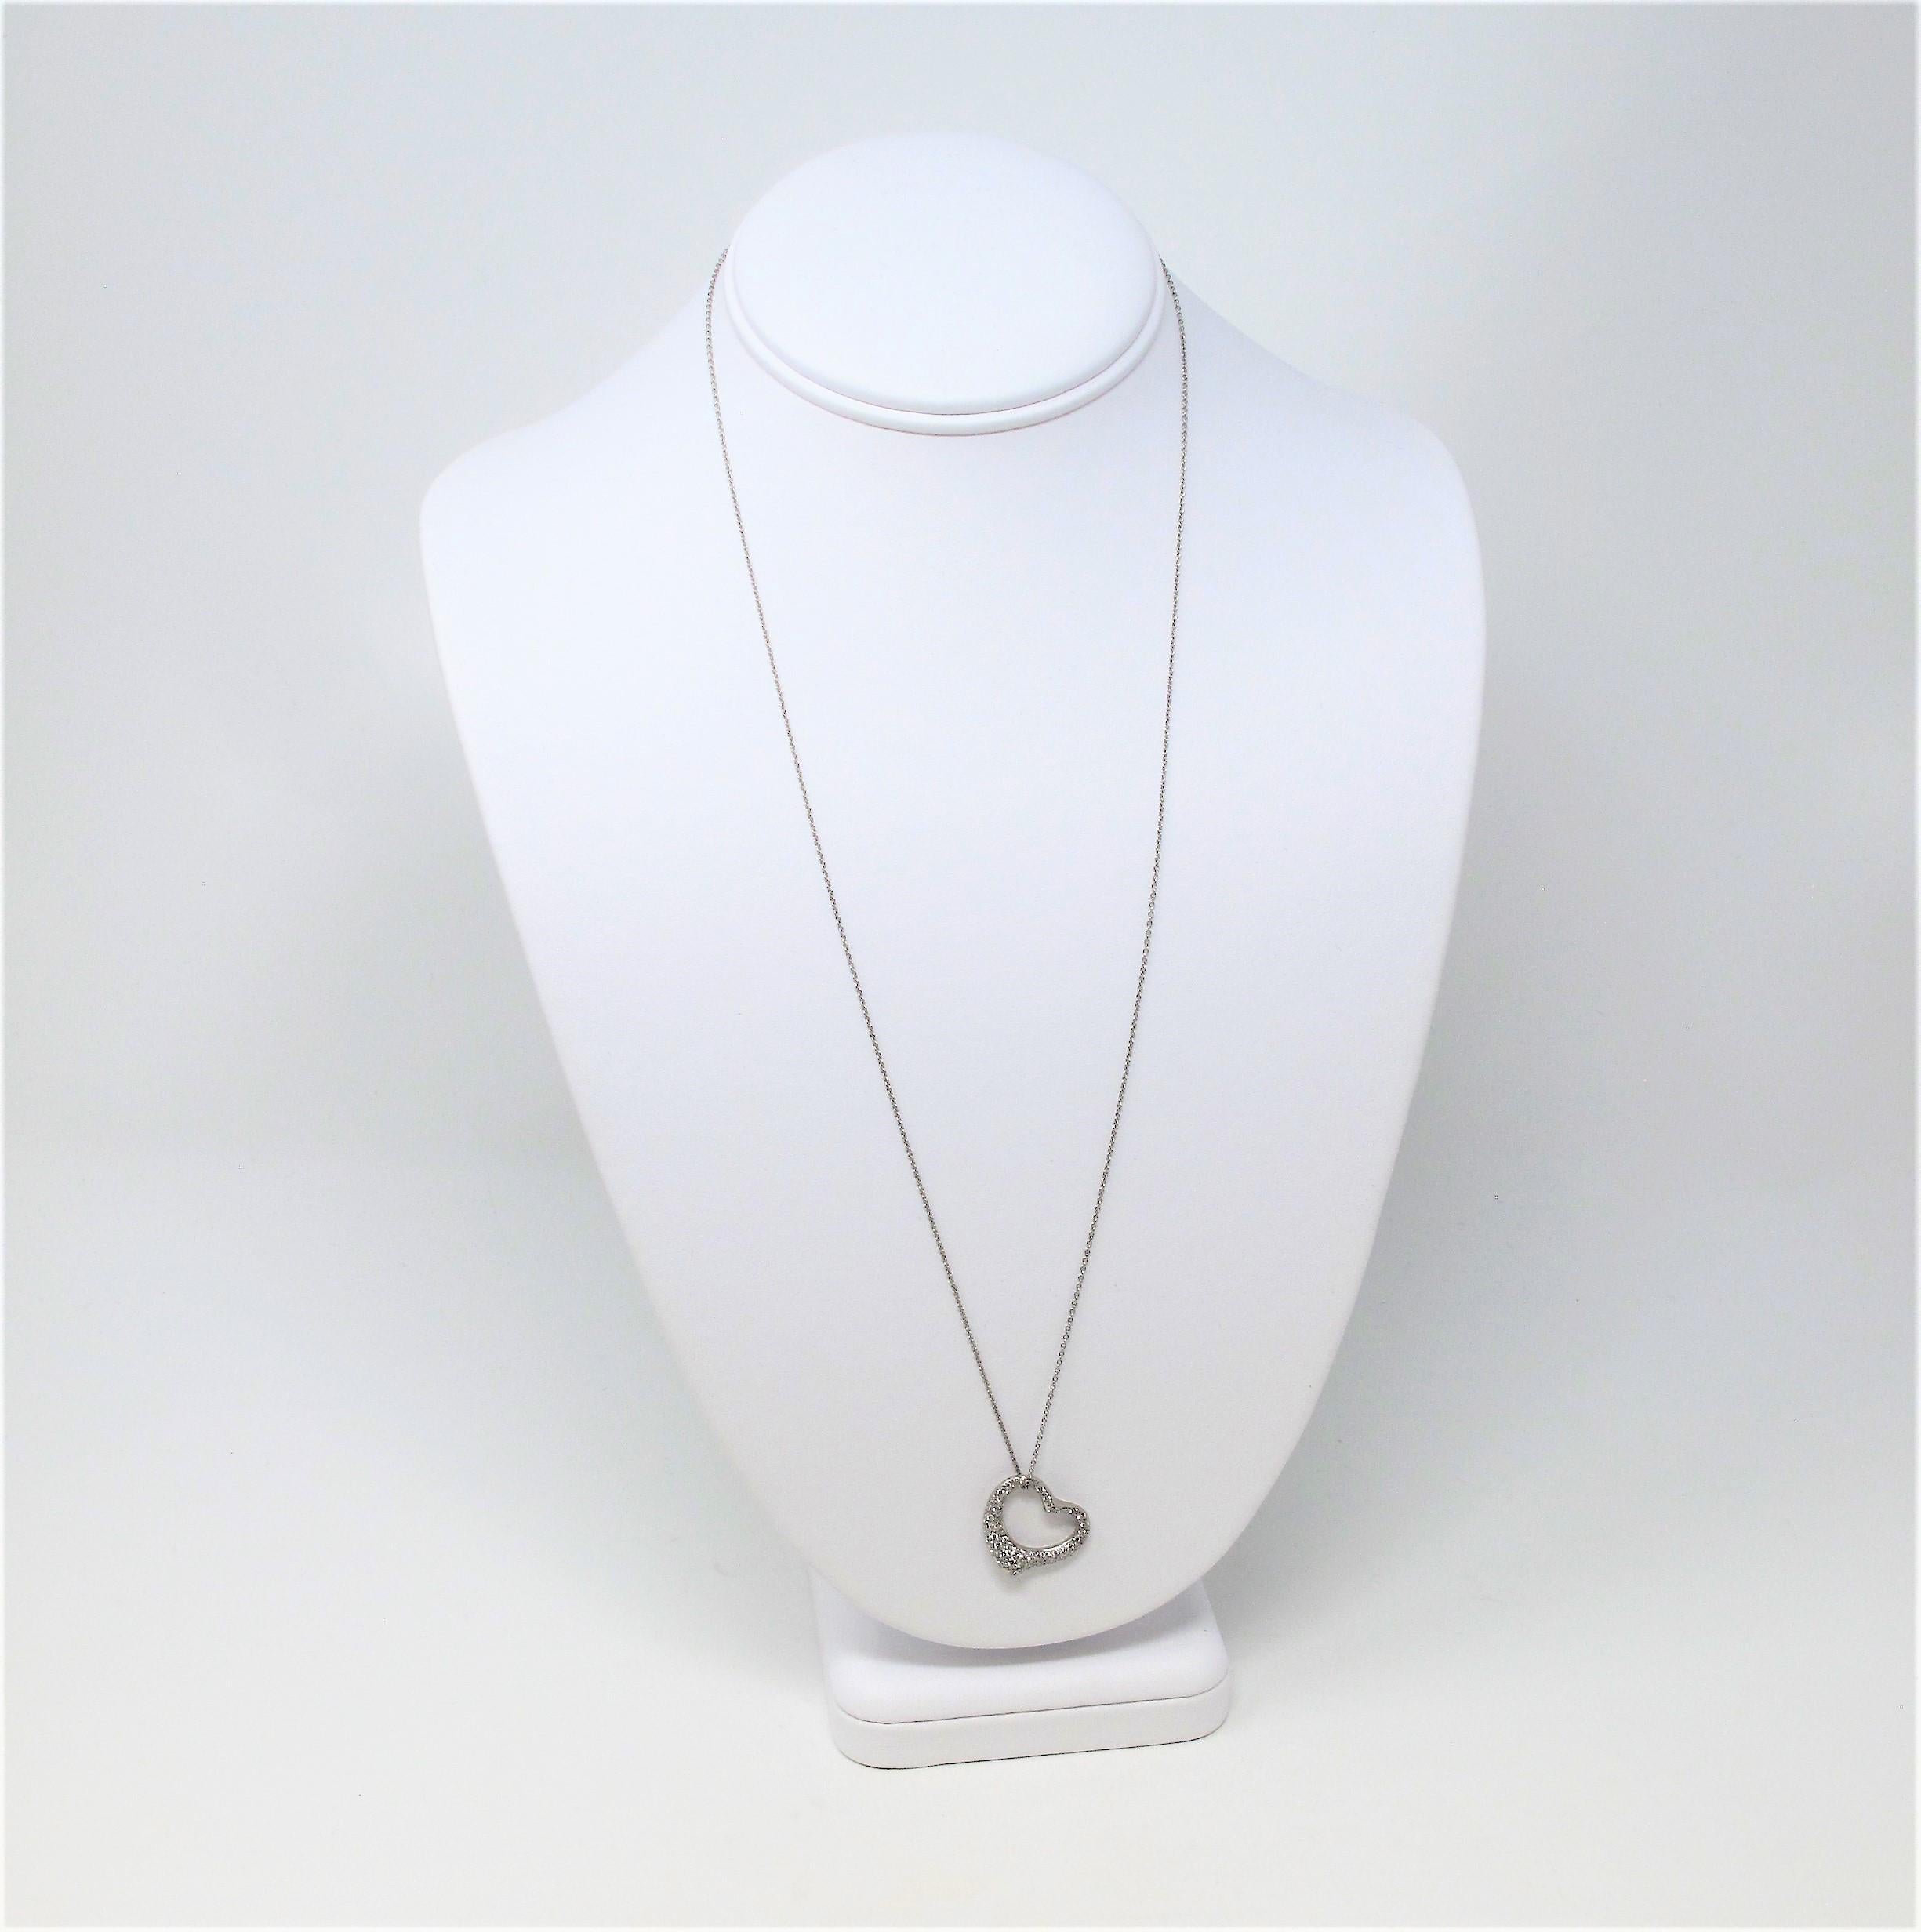 Tiffany & Co. Elsa Peretti Pave Diamond Open Heart Necklace in Platinum For Sale 1